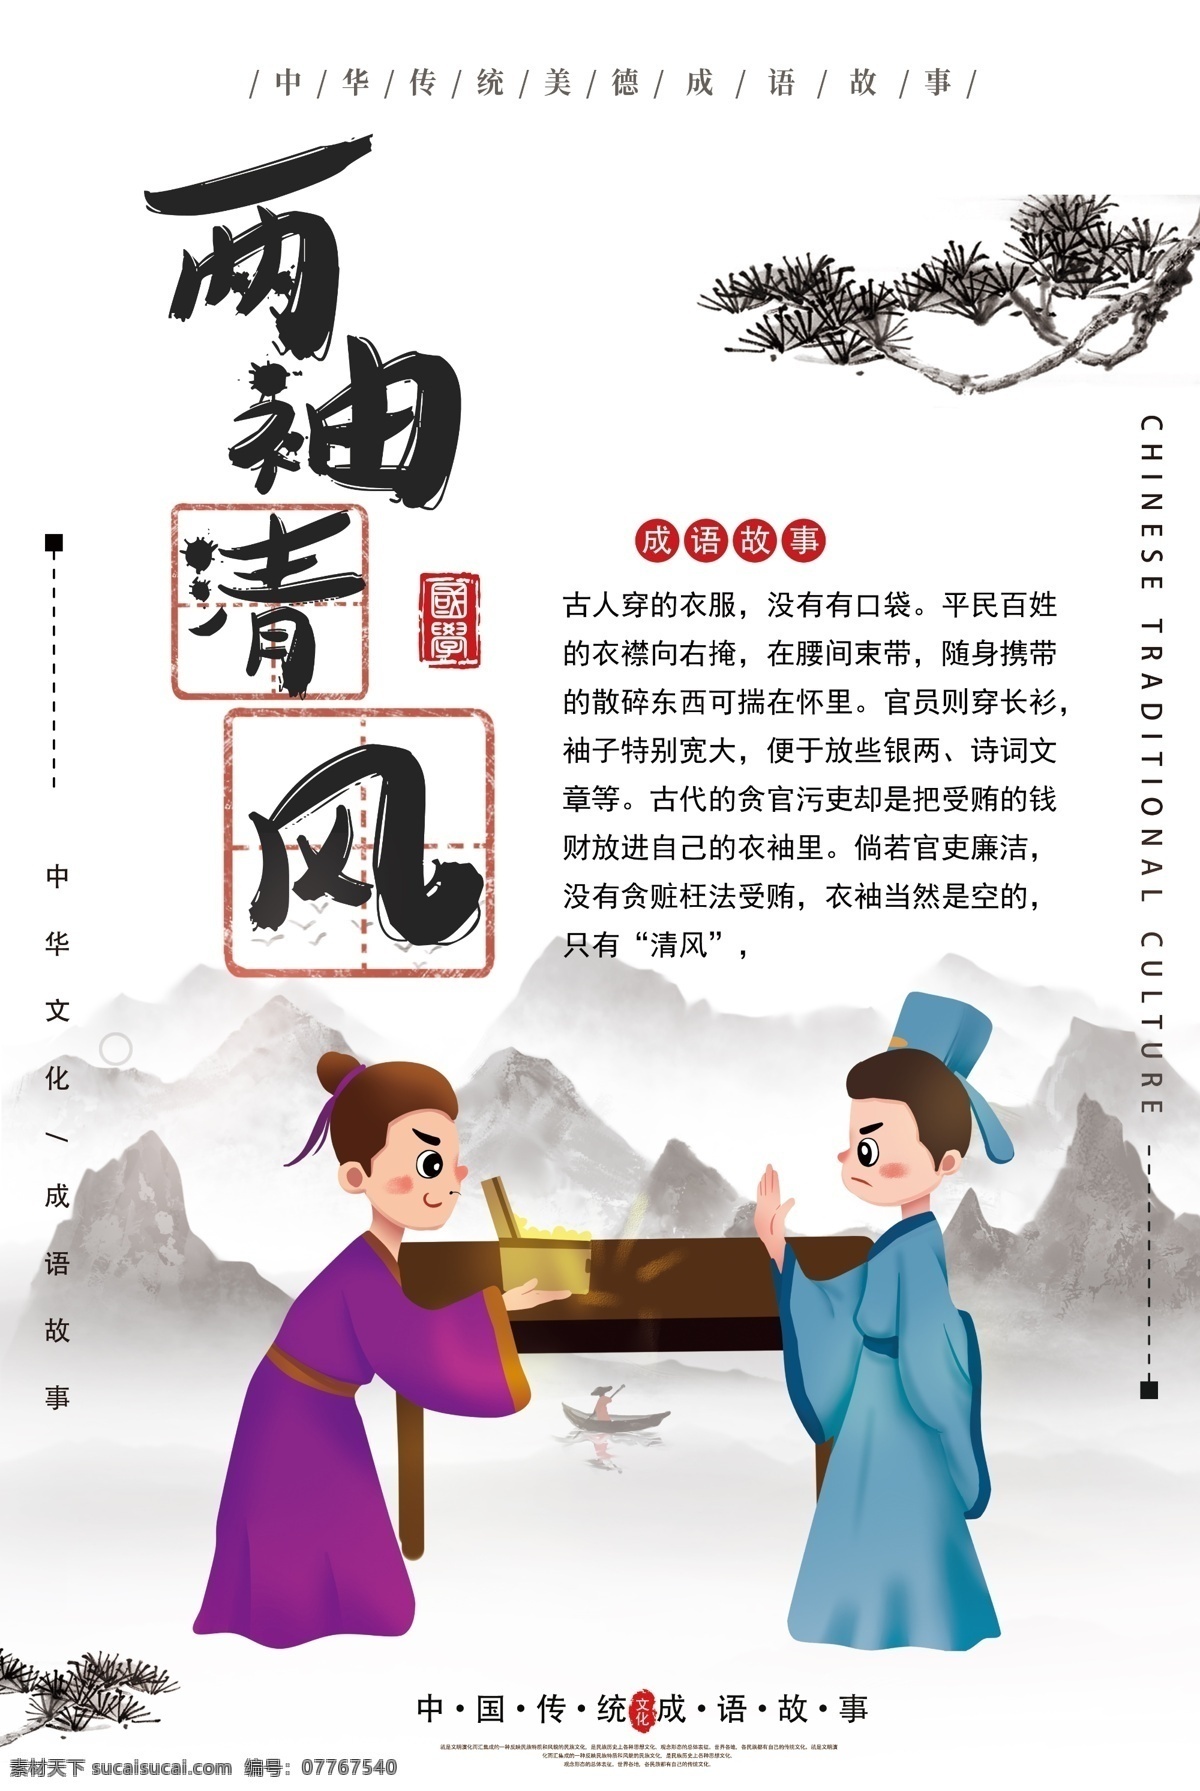 两袖清风 成语 海报 中华传统美德 成语故事 中华文化 教育 教学 插画 典故 儿童读物 成语海报